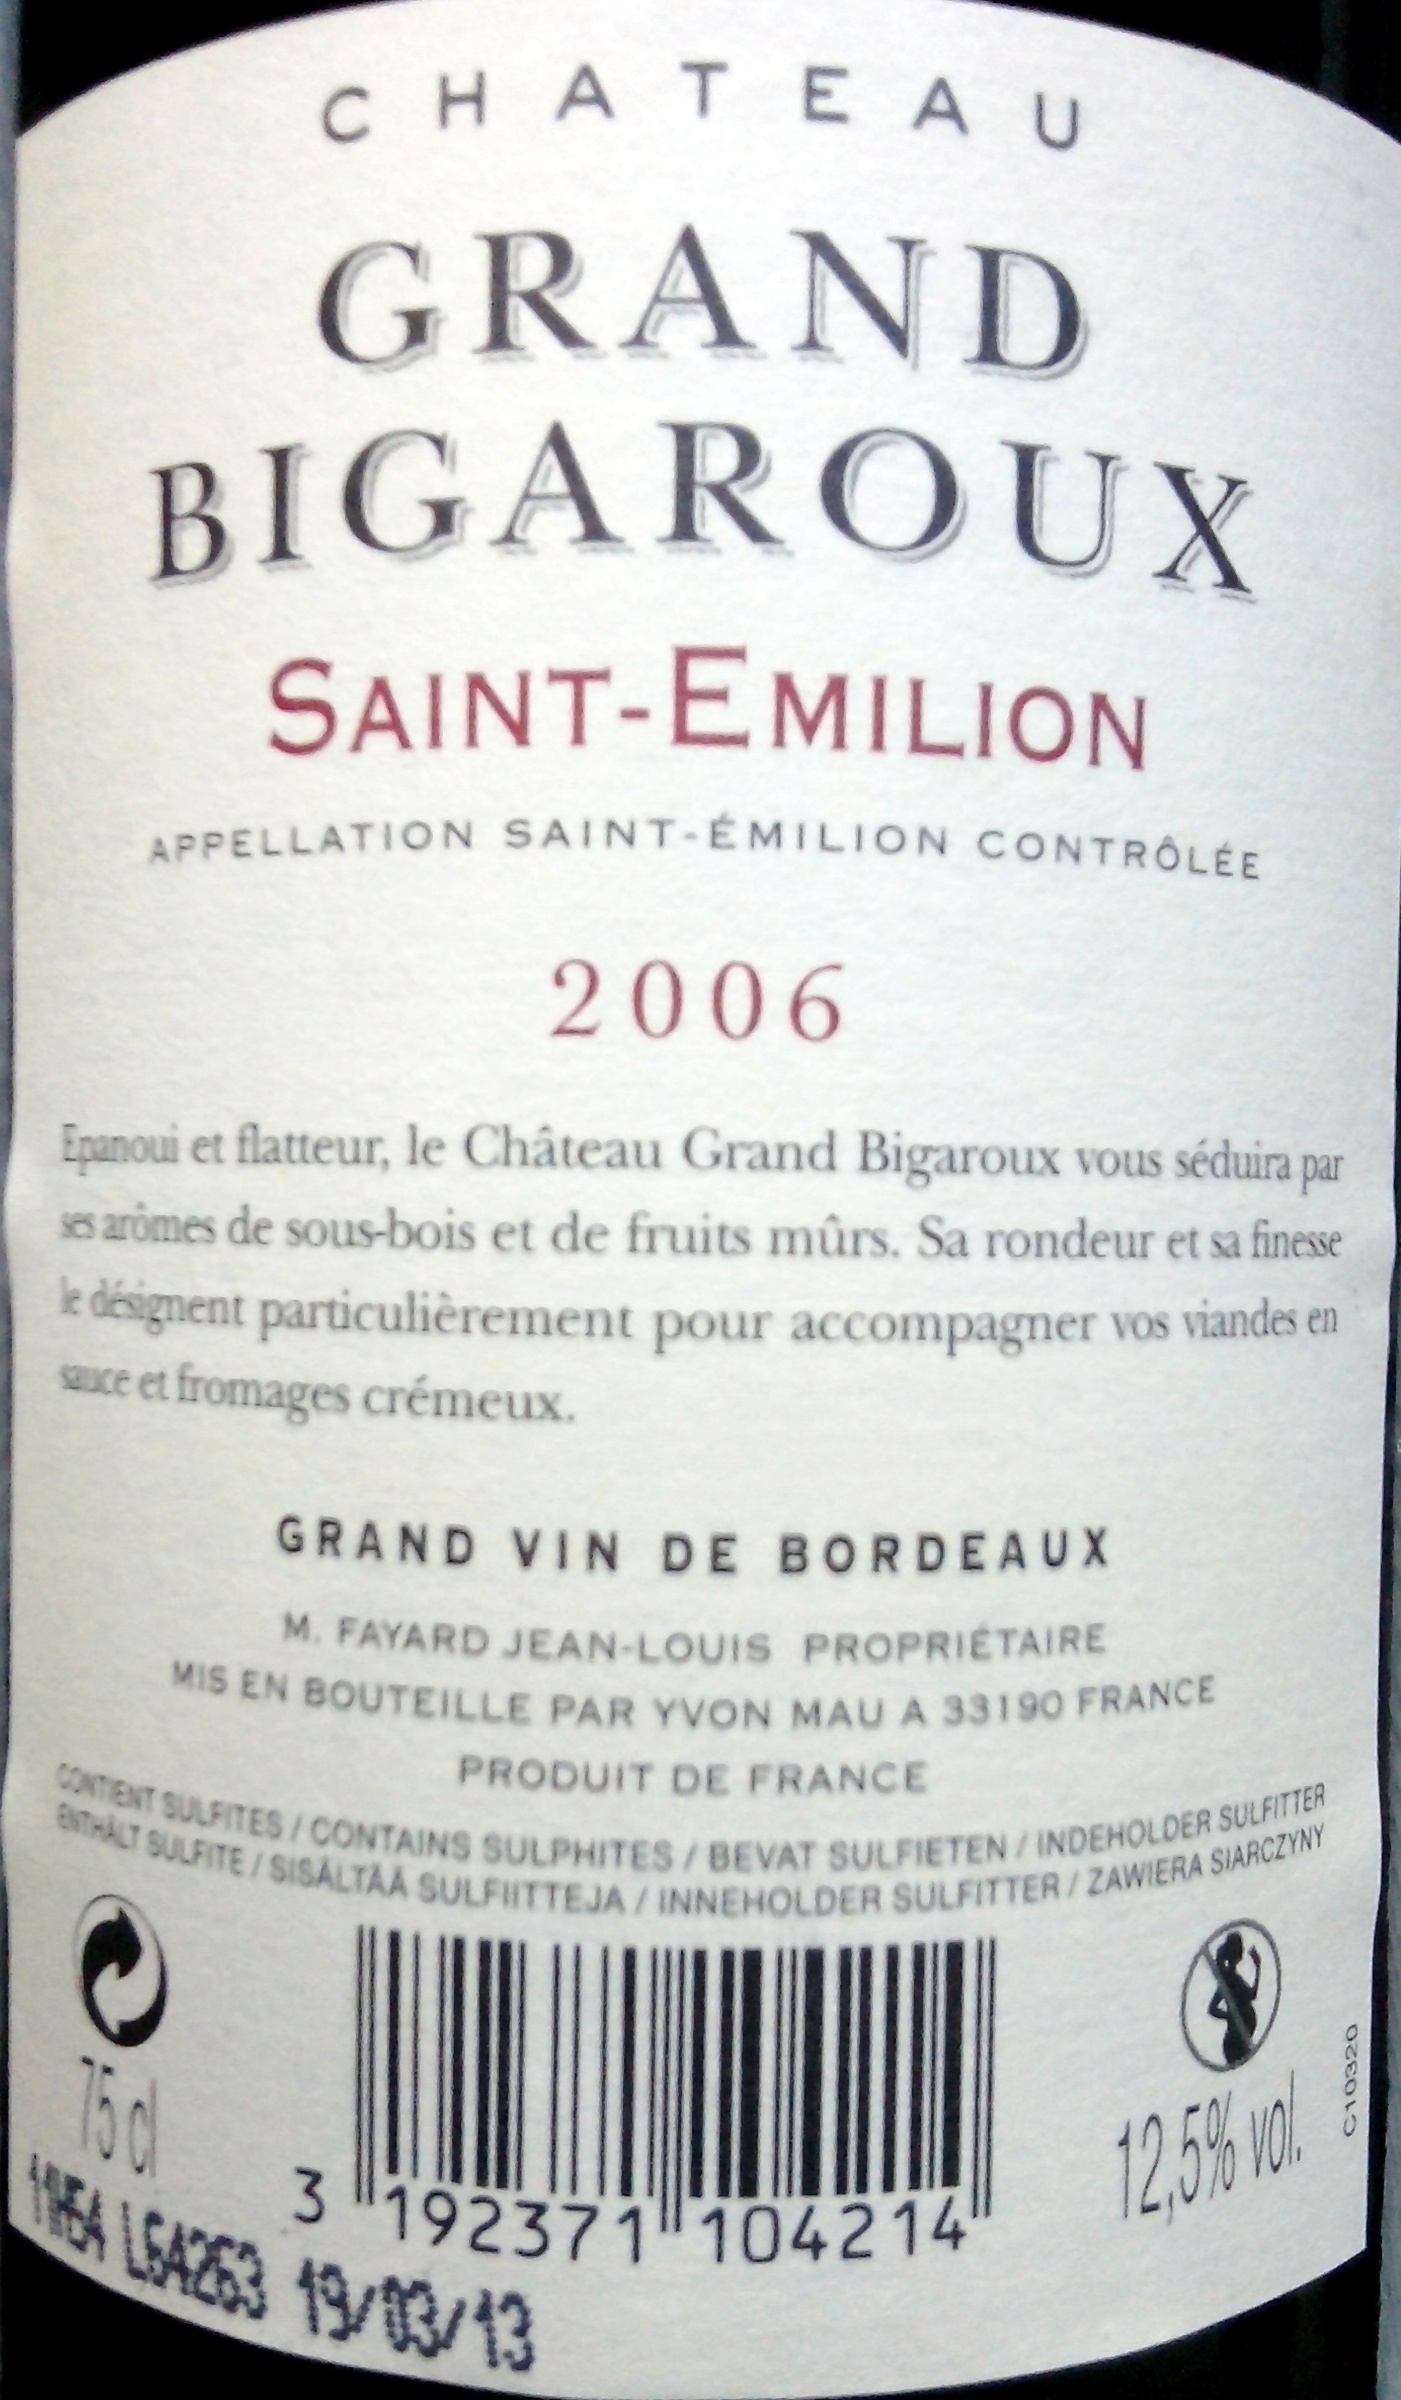 Château GRAND BIGAROUX - Saint-Emilion 2006 - Ingrédients - fr